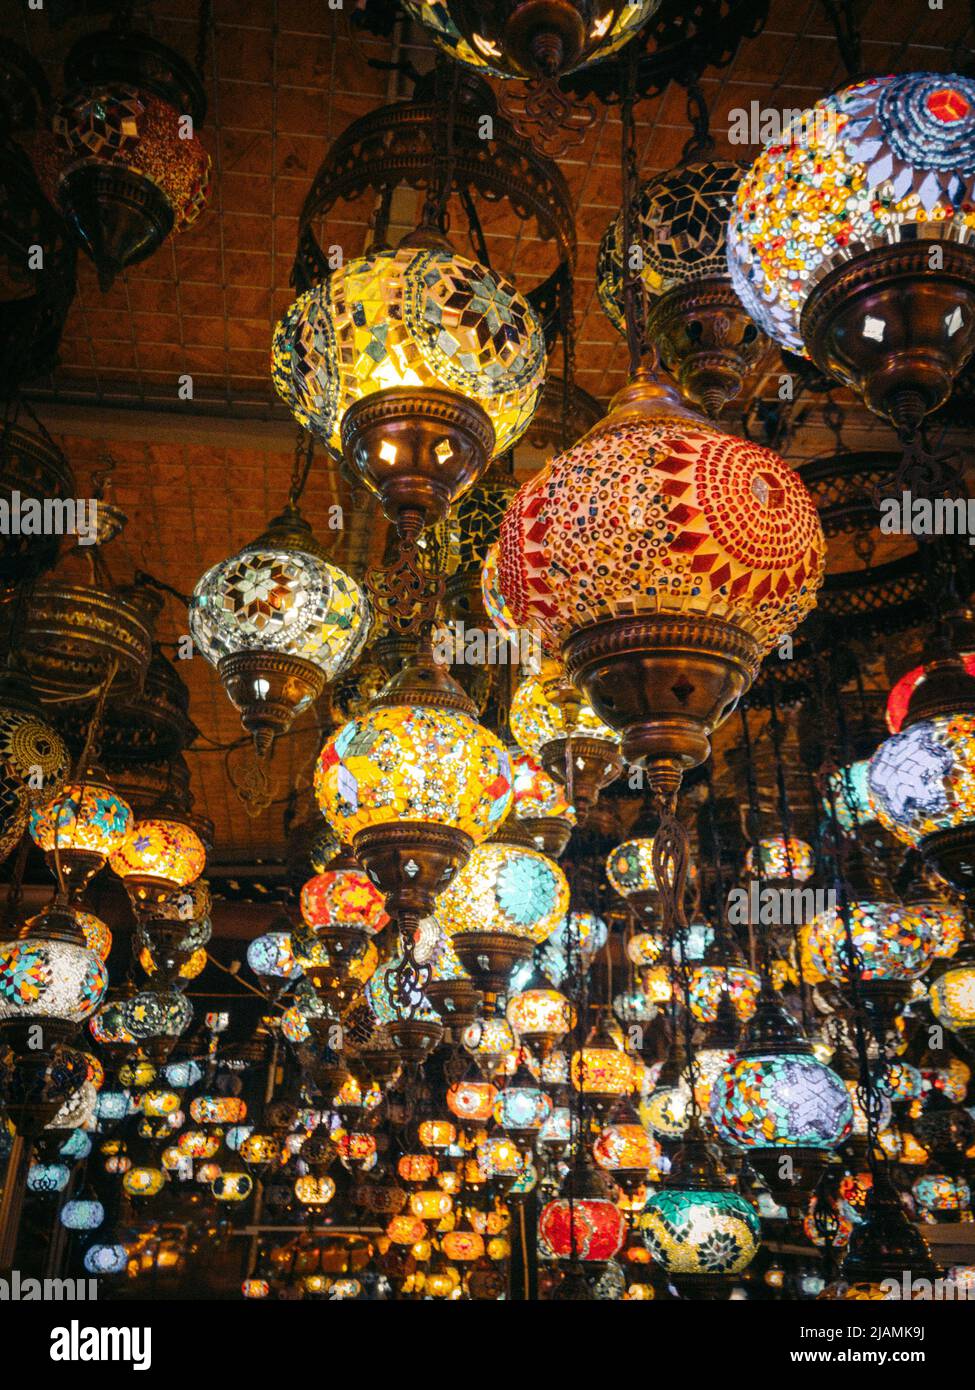 orientalische Lampen im türkischen Souvenirladen Stockfotografie - Alamy